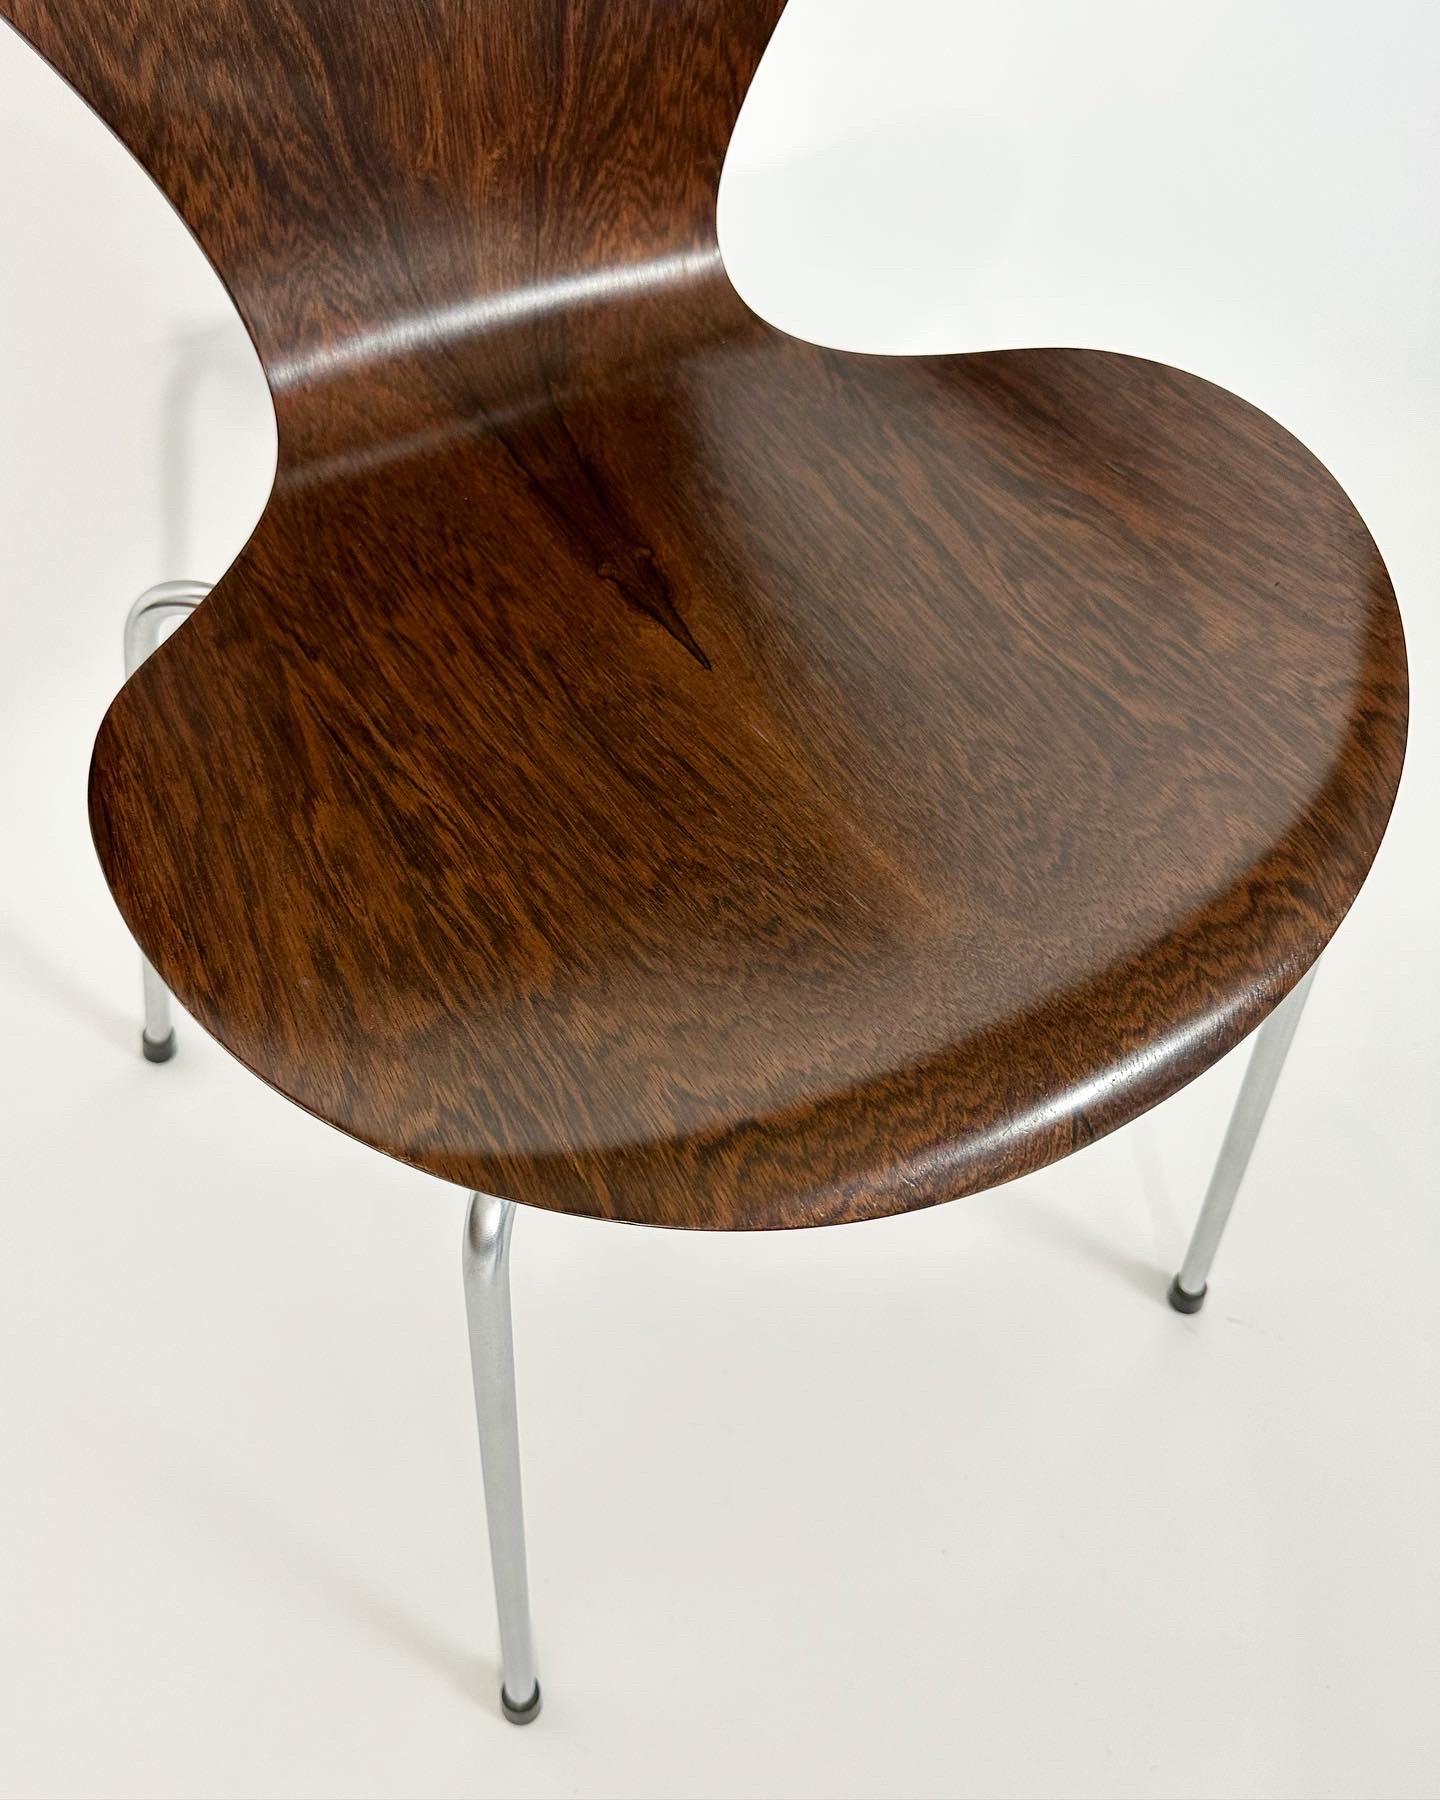 Stainless Steel Arne Jacobsen Rosewood Chair Series 7 Fritz Hansen Denmark 1968 For Sale